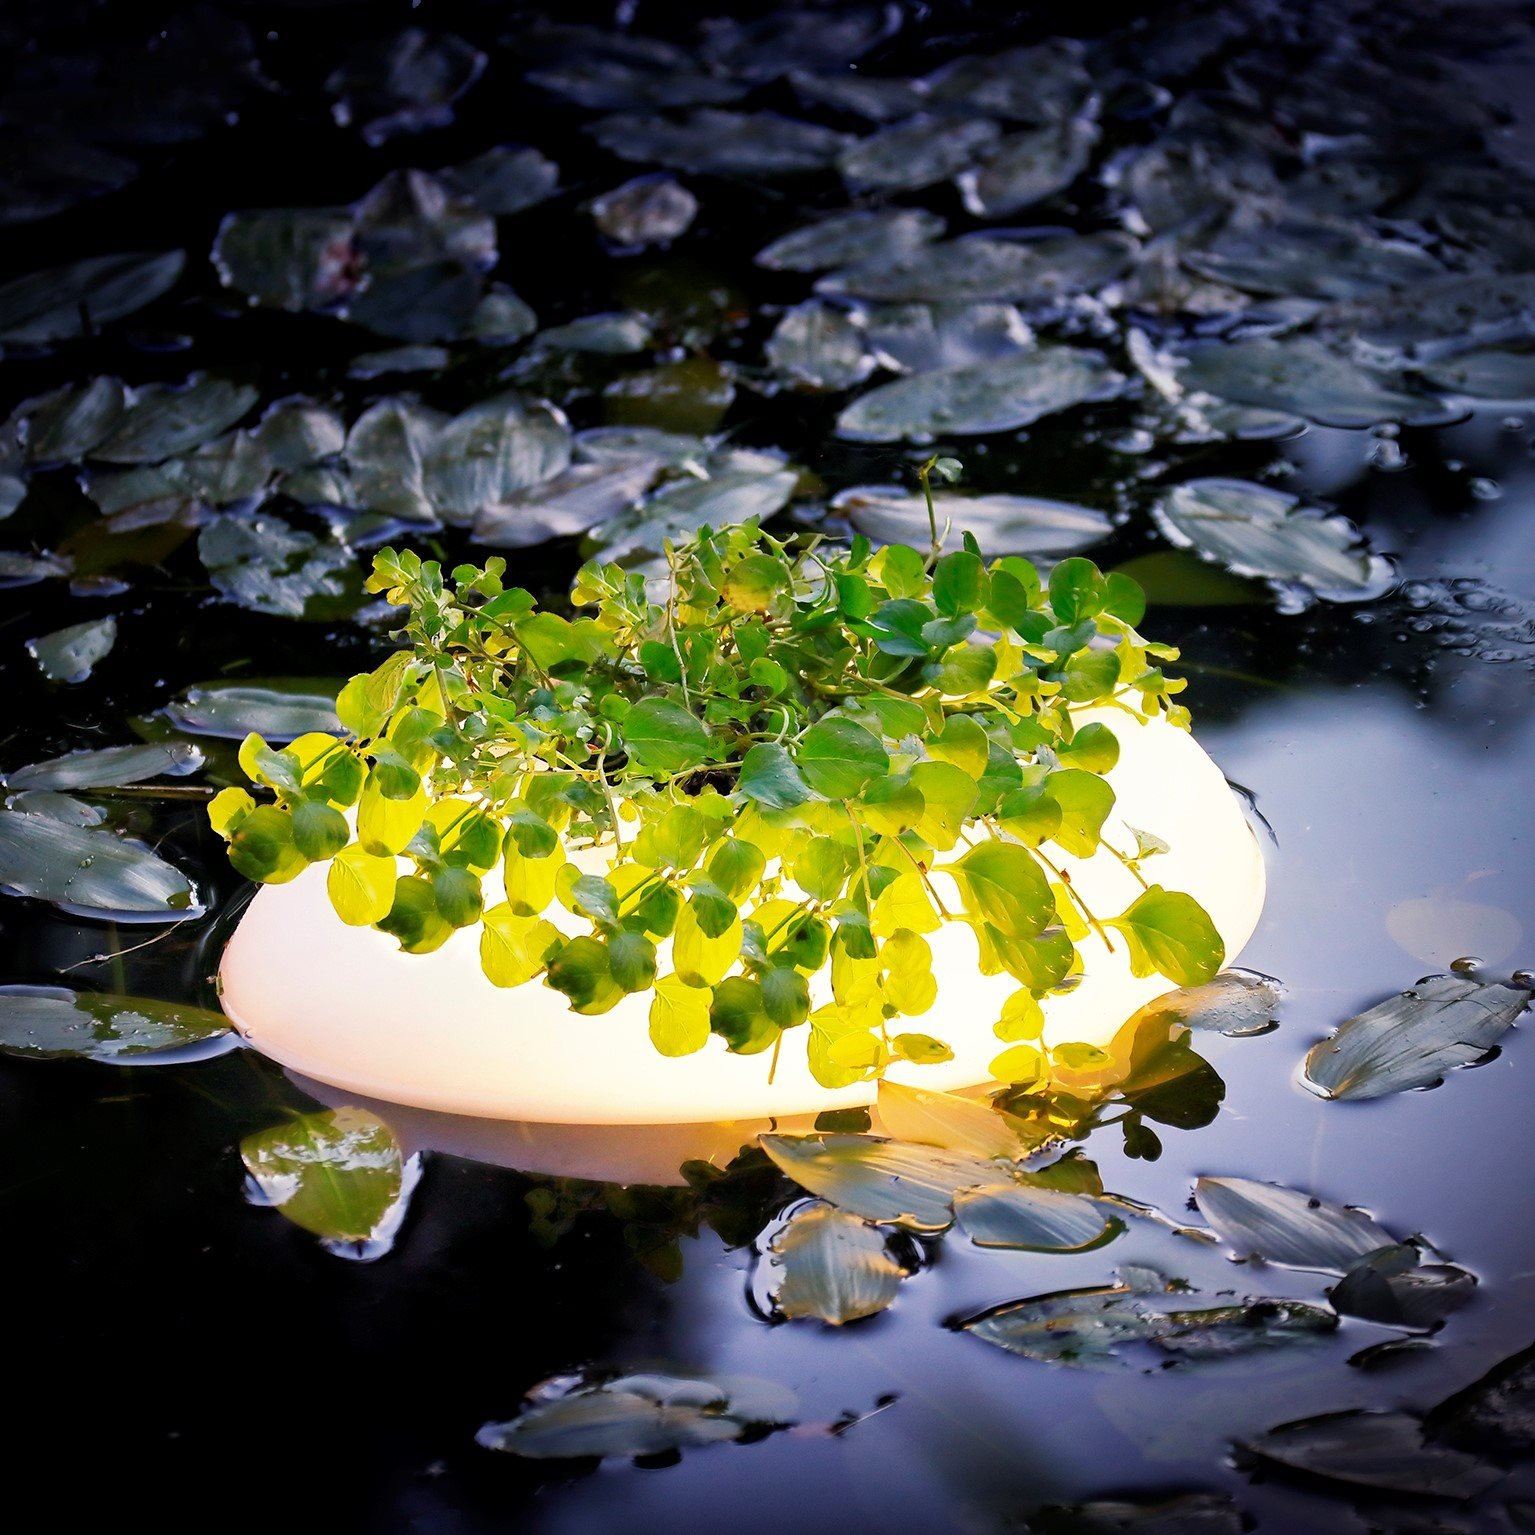 Velda-Floating-Pond-Light-drijvend-lampje-met-plaats-voor-je-favoriete-vijverplant-